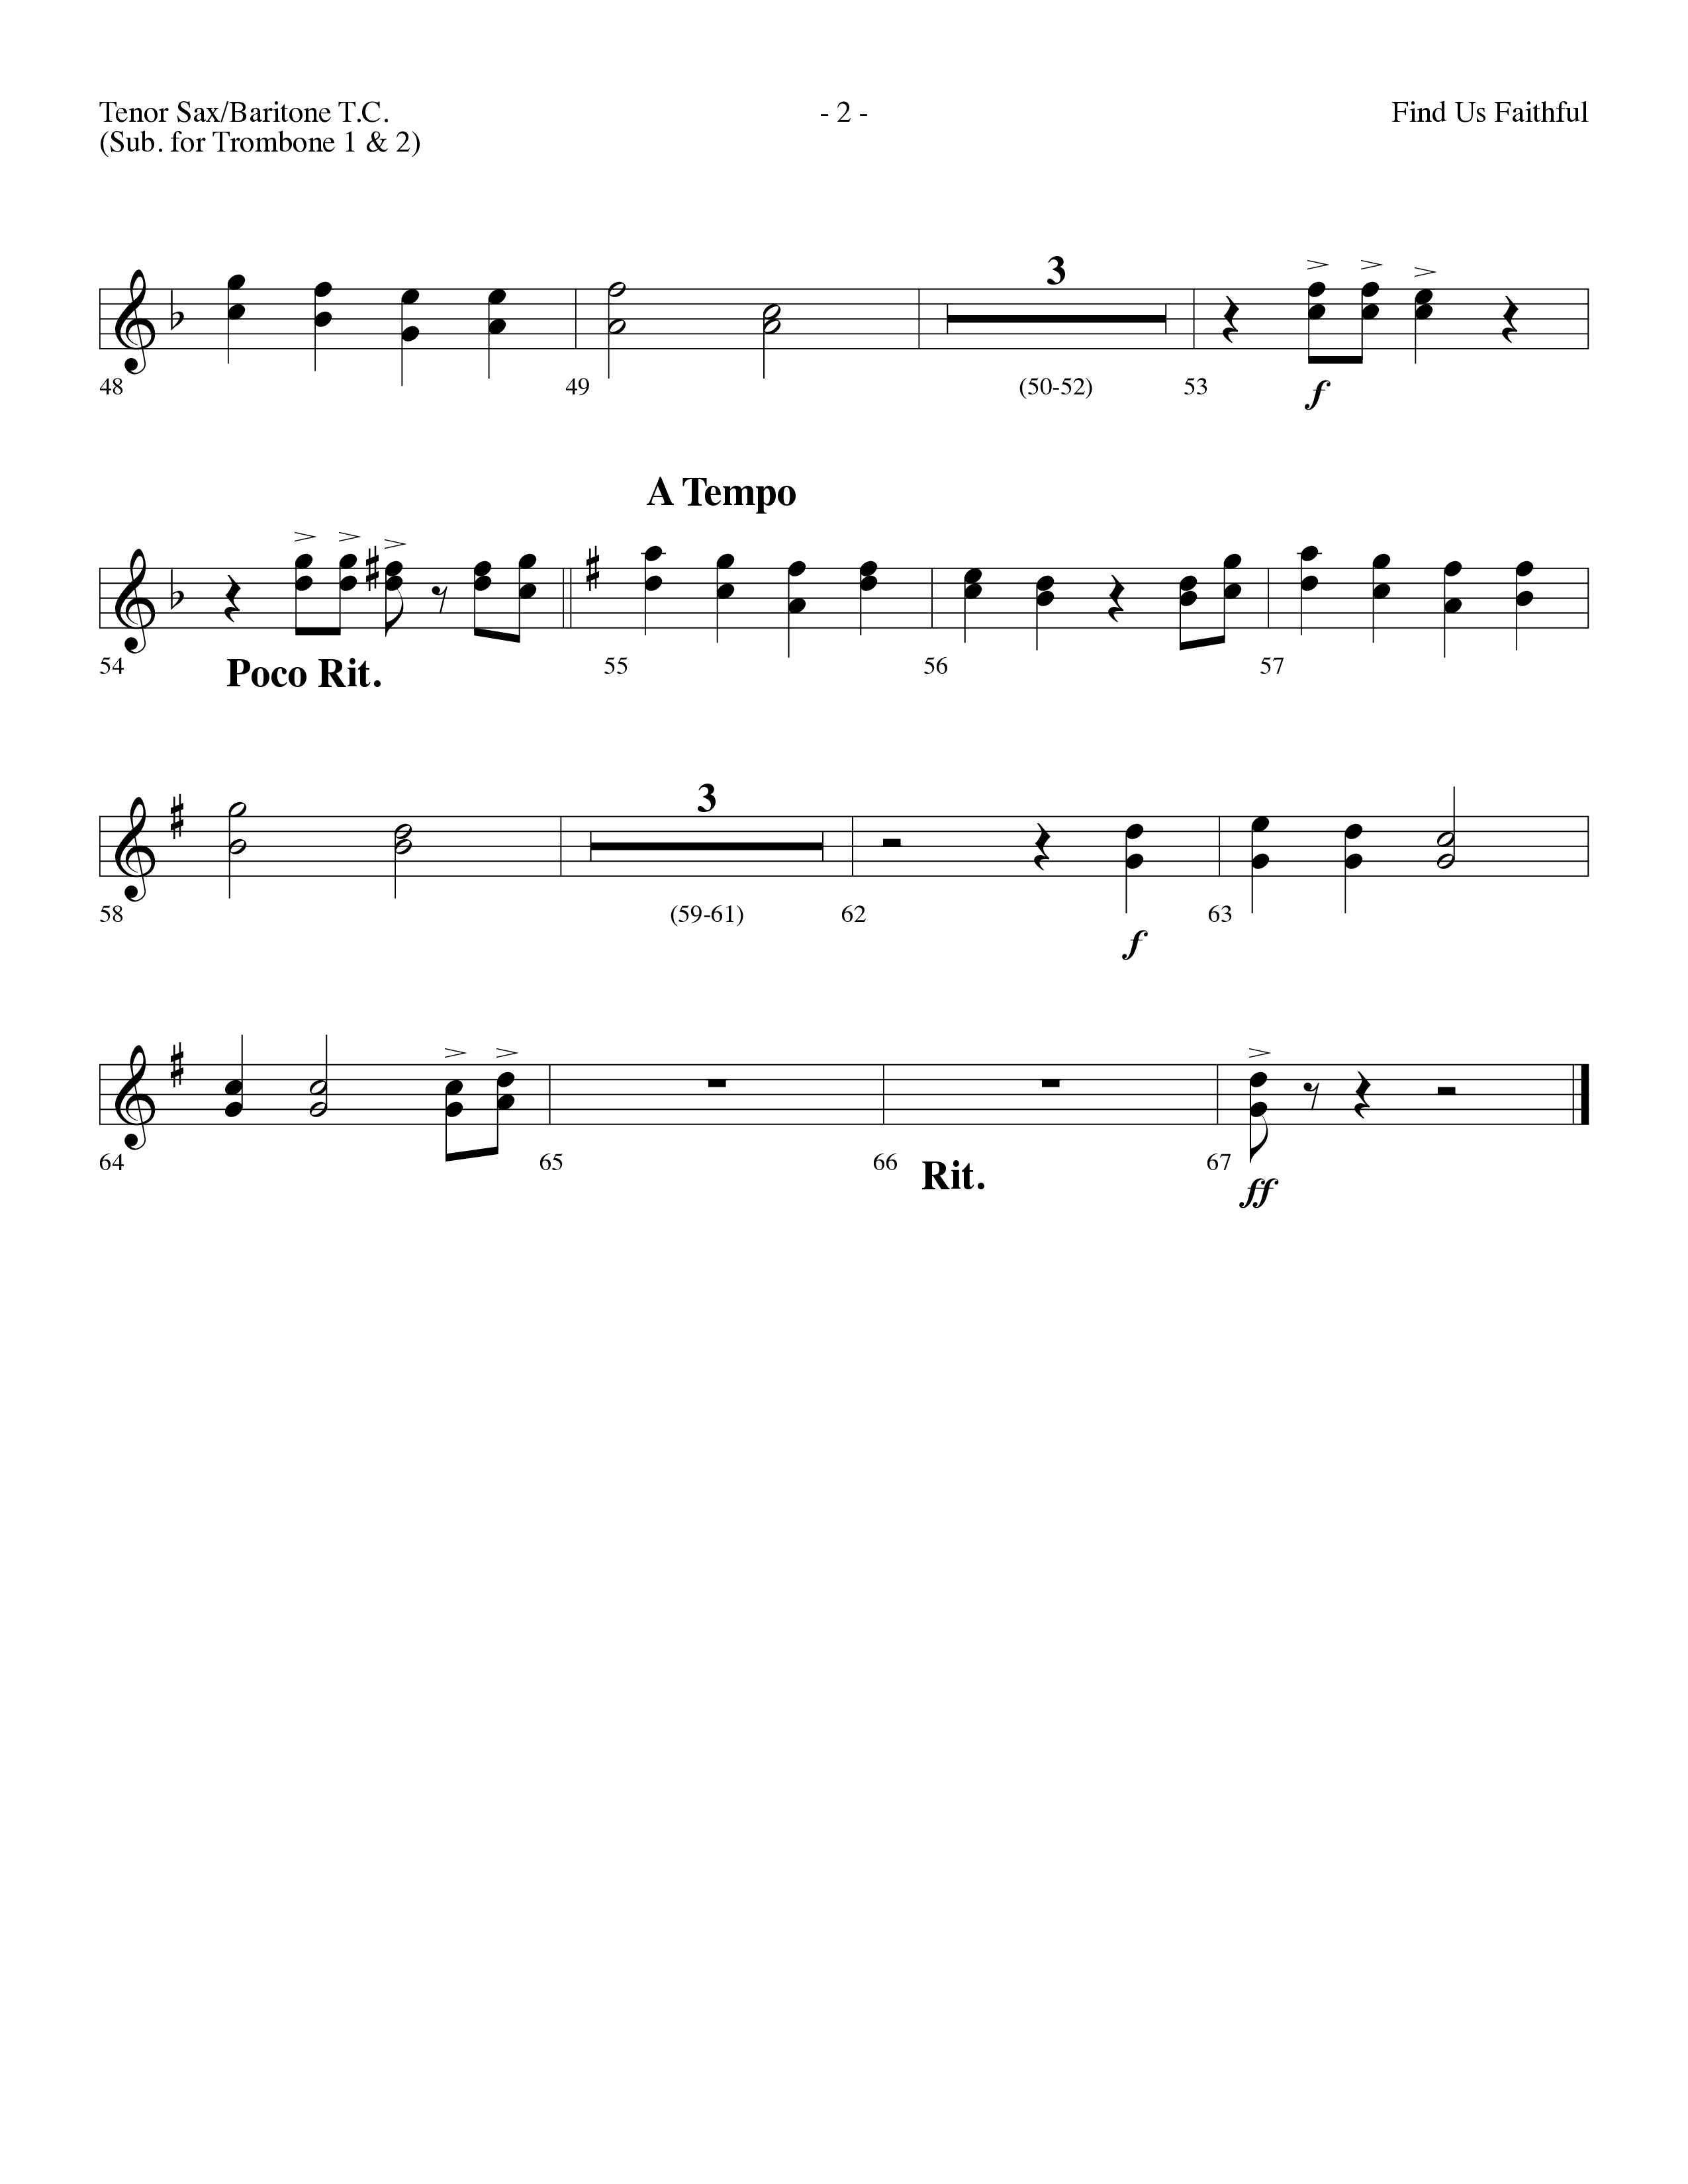 Find Us Faithful (Choral Anthem SATB) Tenor Sax/Baritone T.C. (Lifeway Choral / Arr. Dennis Allen)